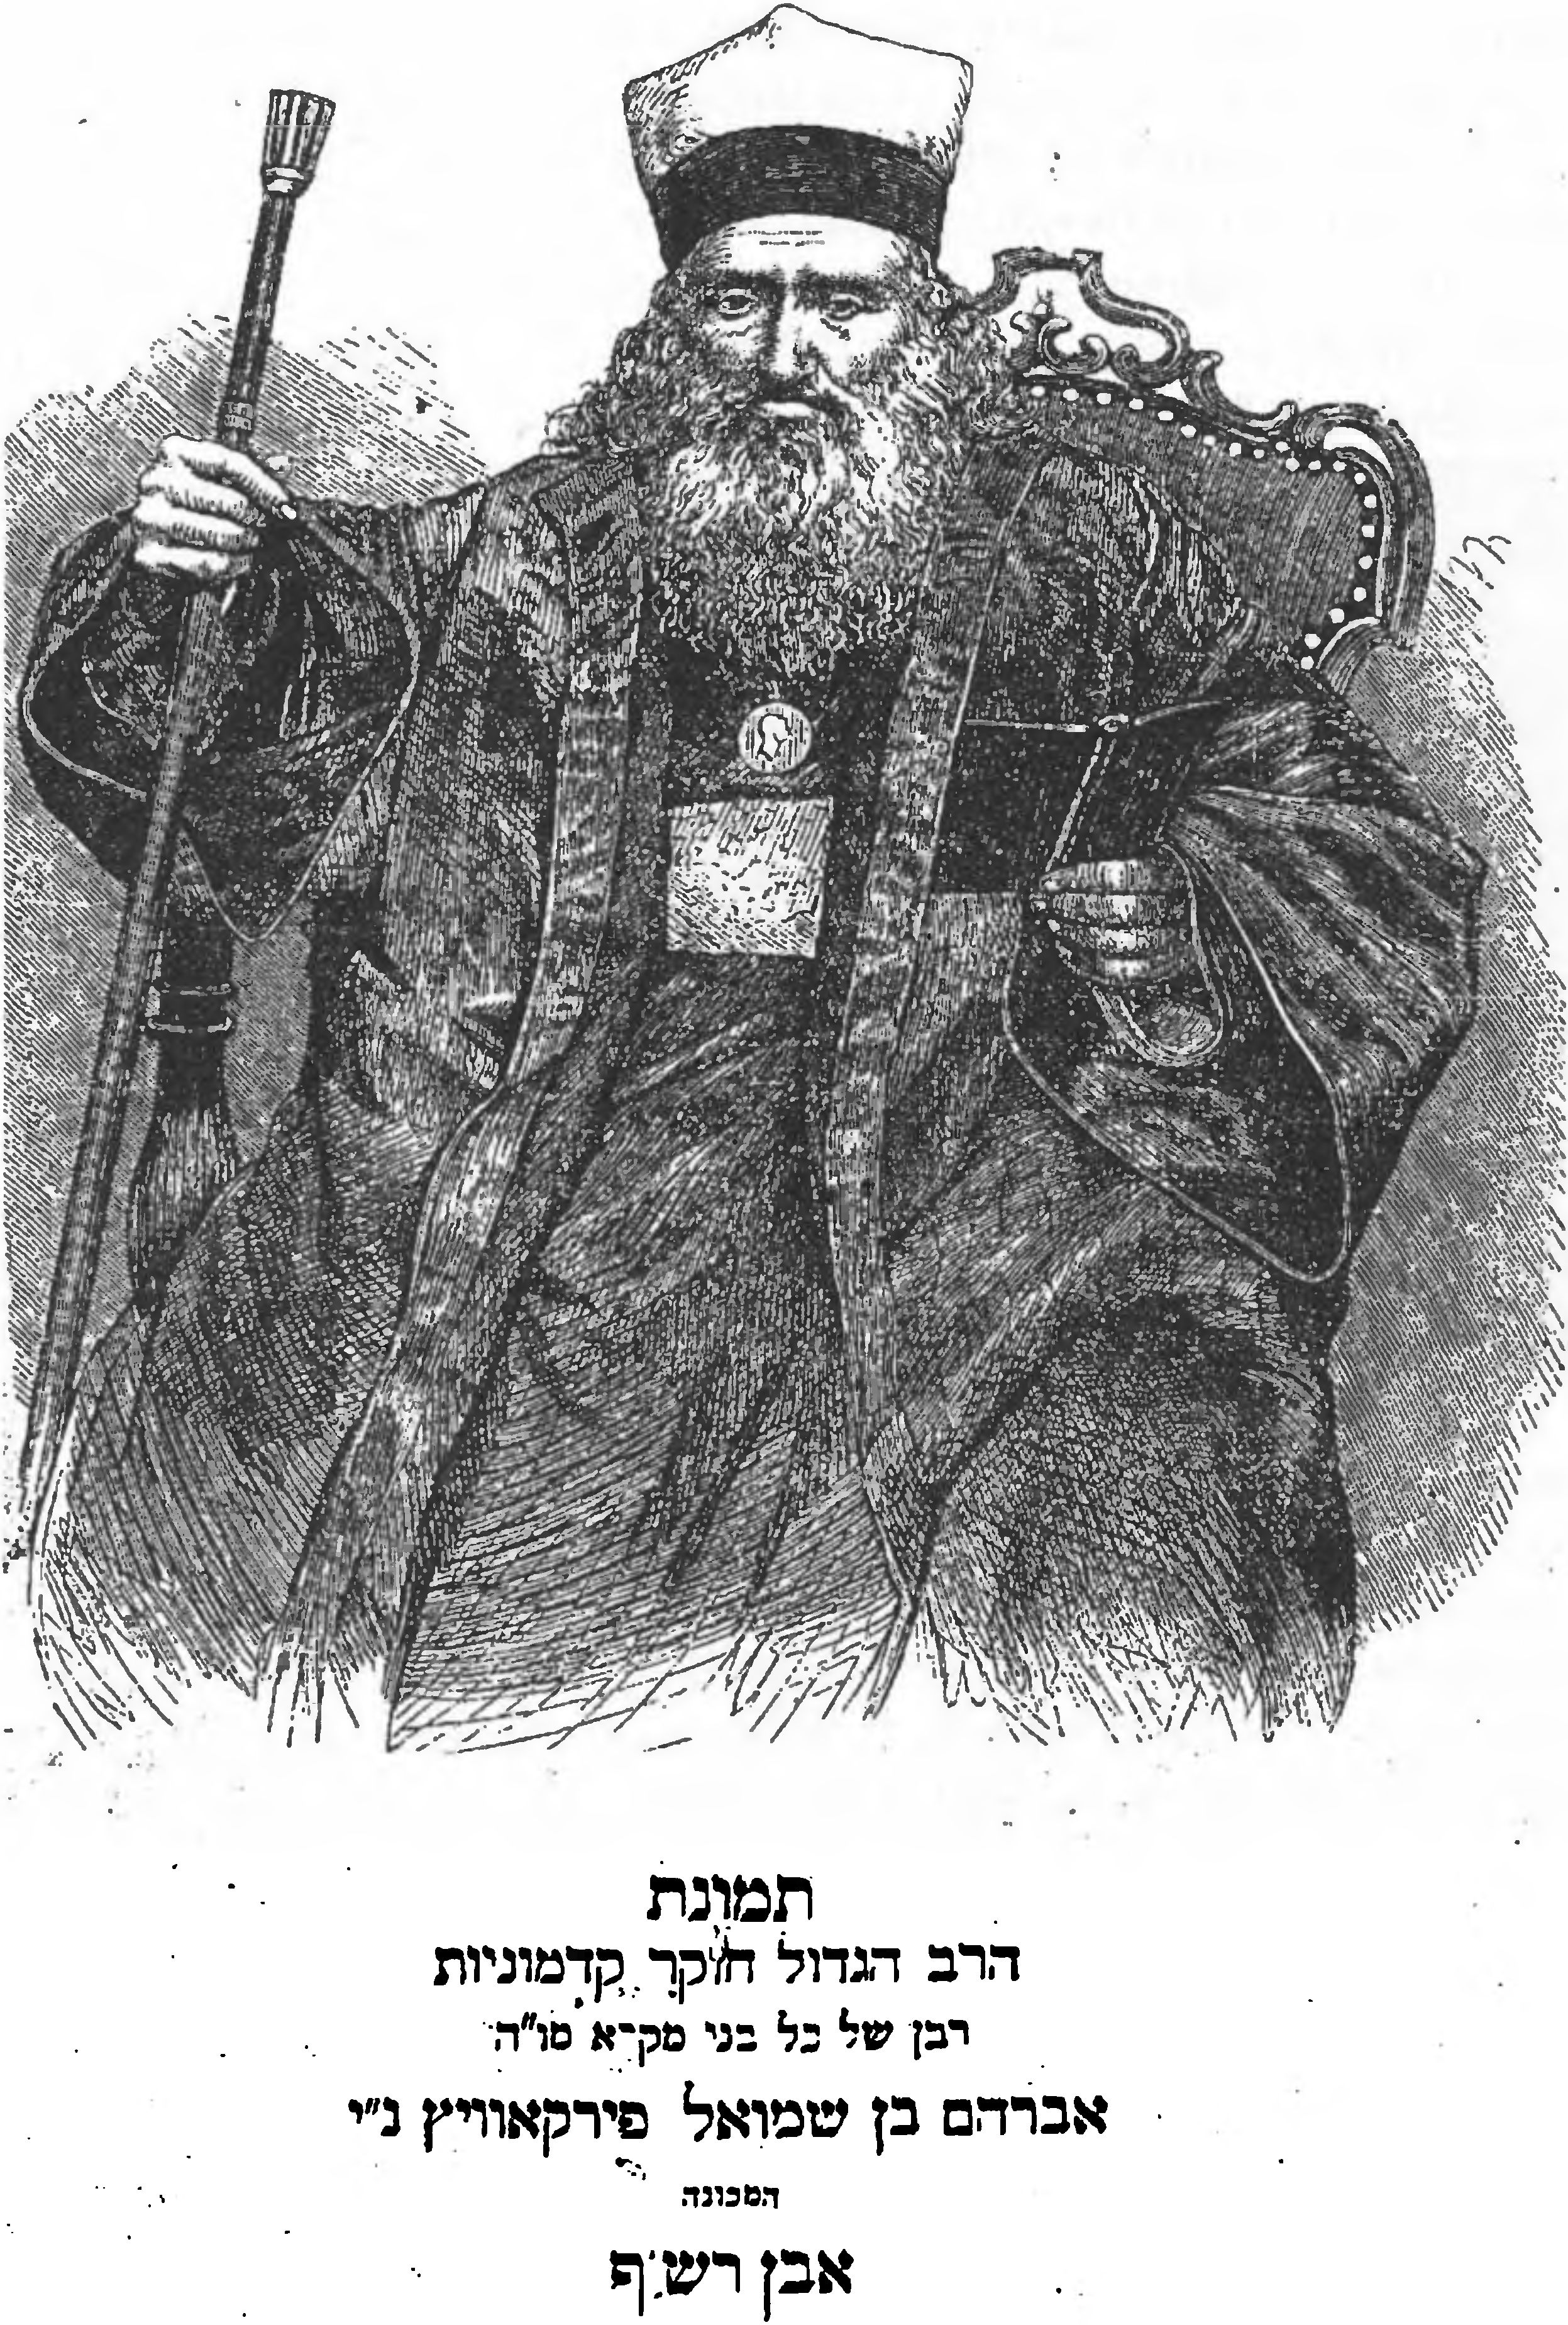 Страница из книги «Авней зиккарон» с портретом А.С. Фирковича